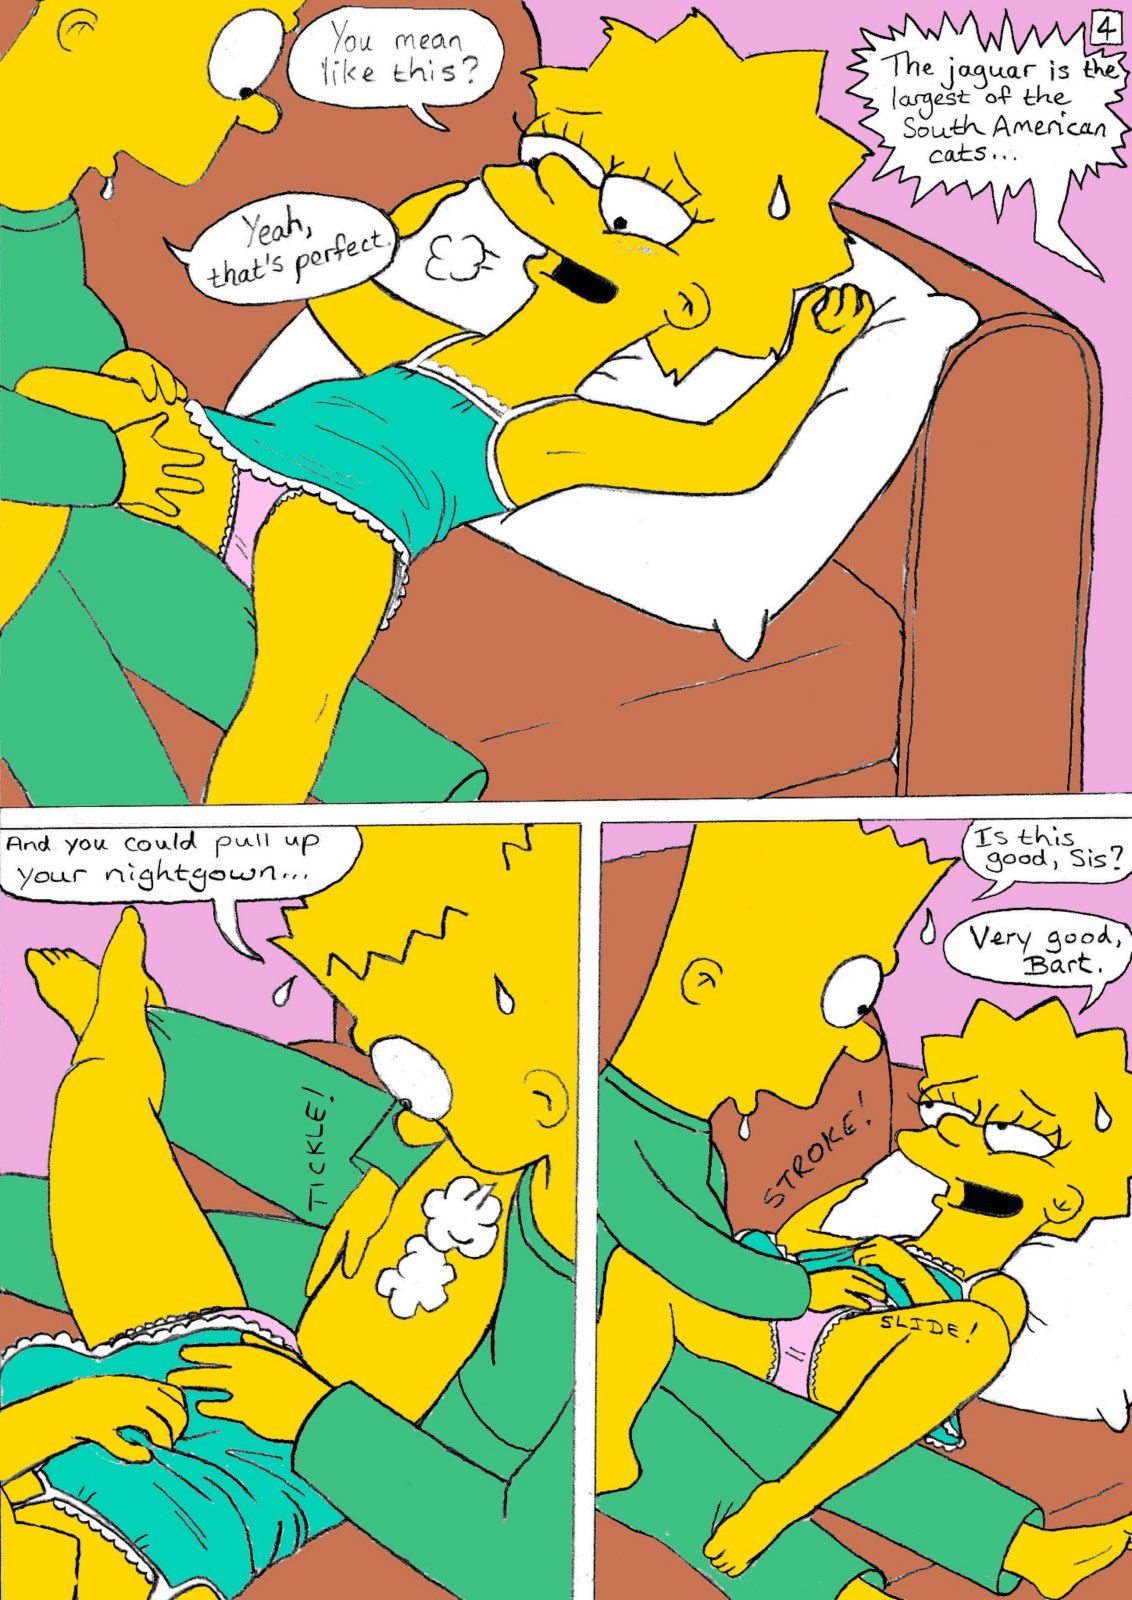 Порно Комикс Барт И Лиза Маленькие